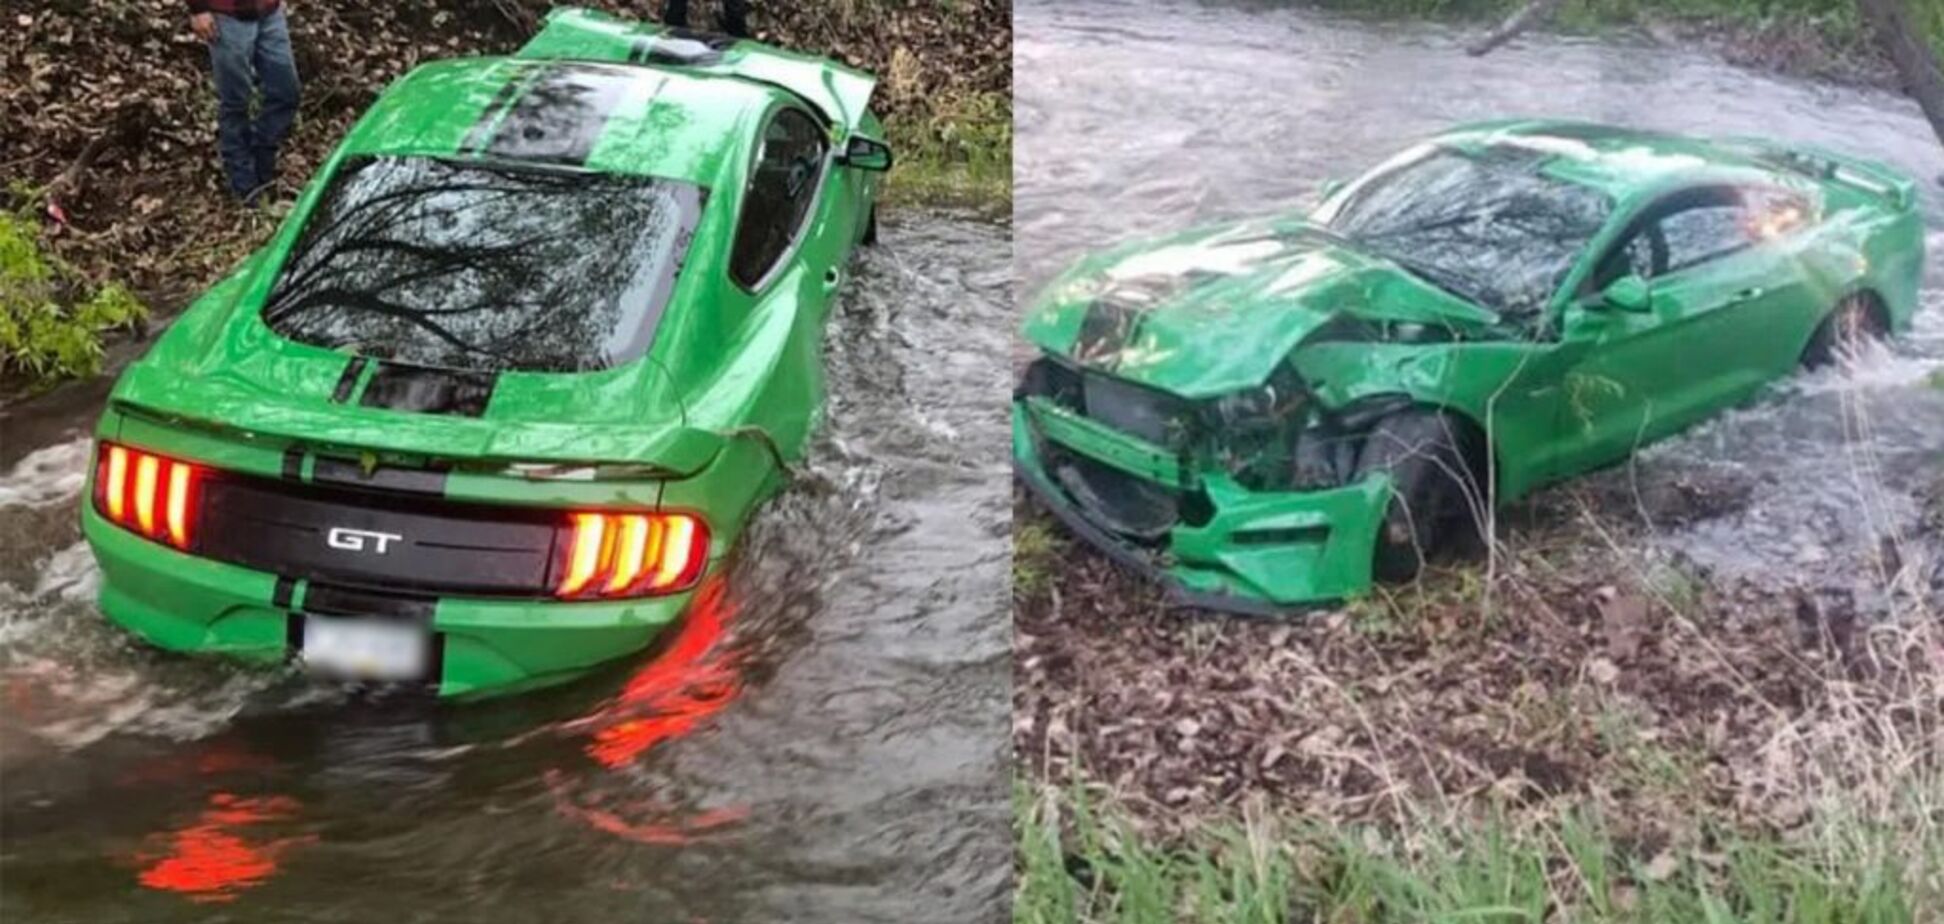 Новий Ford Mustang розбили та втопили через 3 дні після купівлі